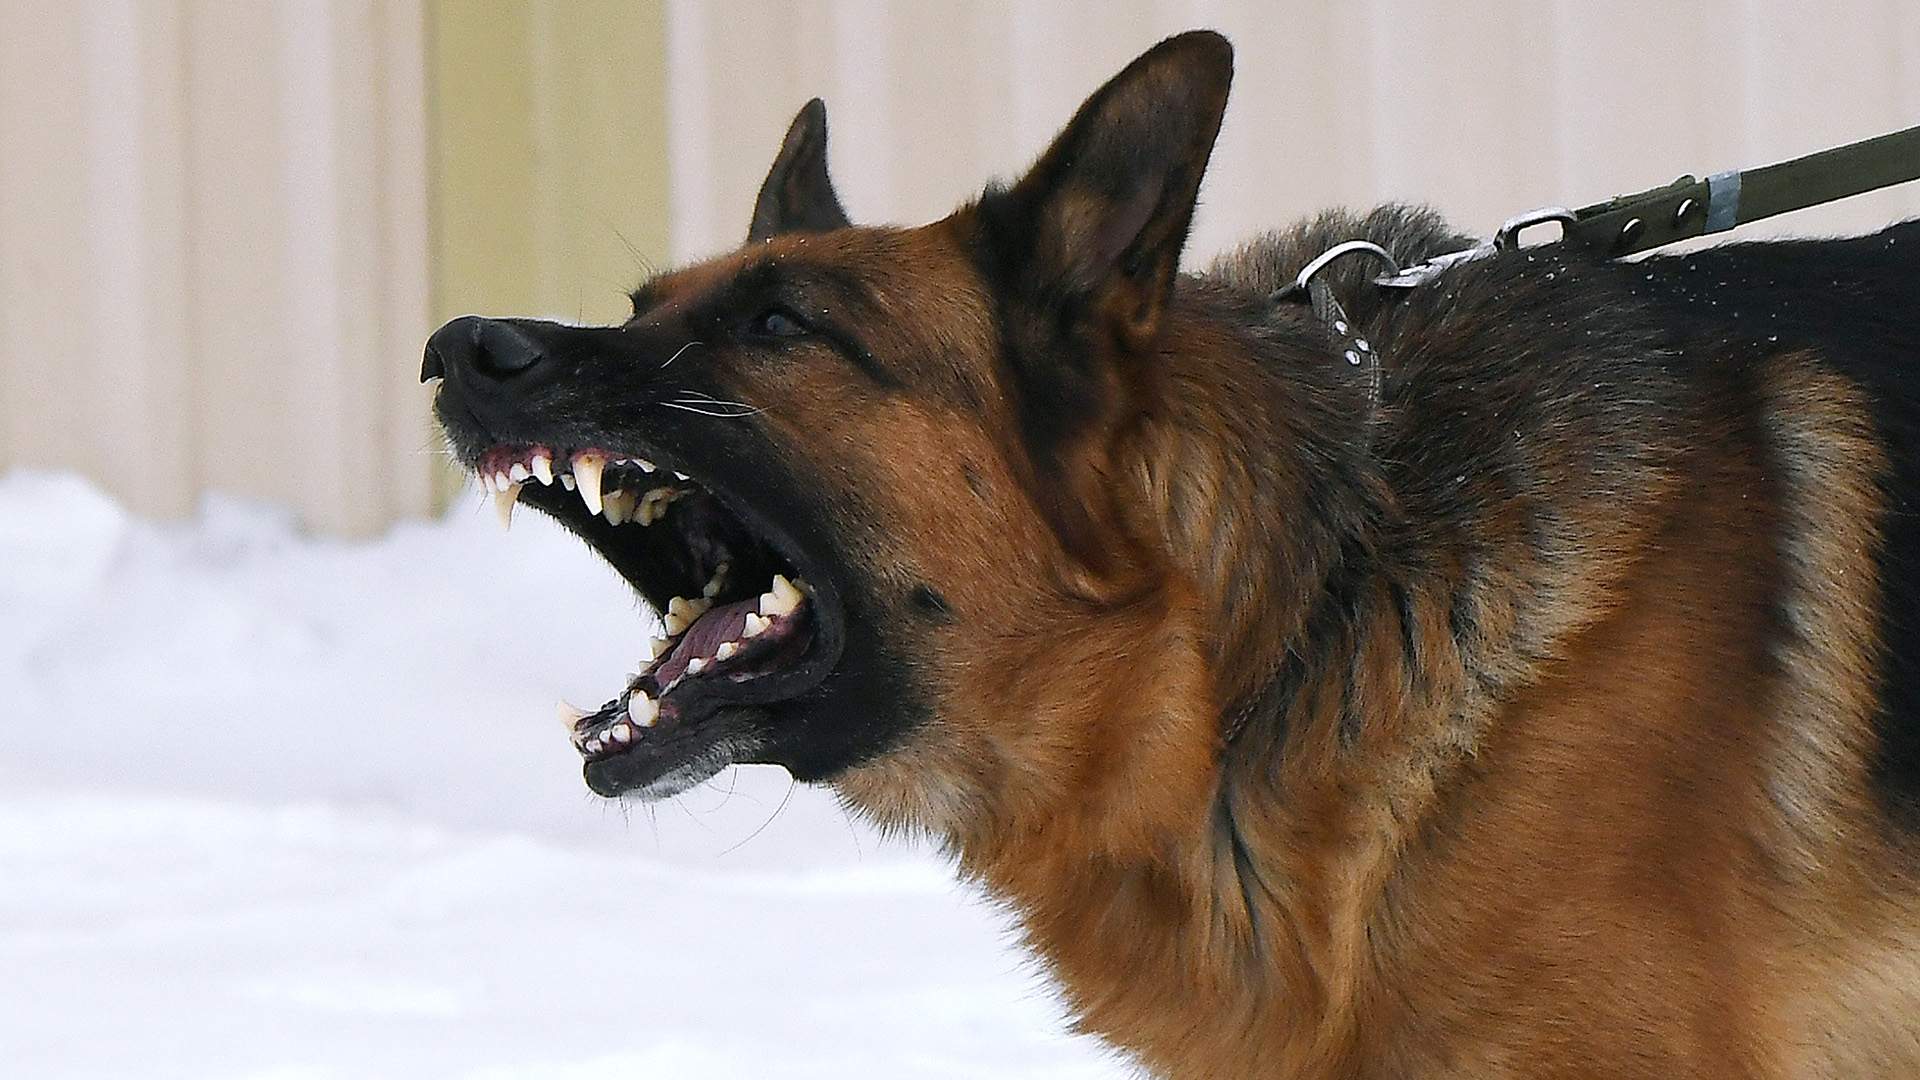 Как пострадавшему подготовиться к суду после нападения собаки на него или его питомца?